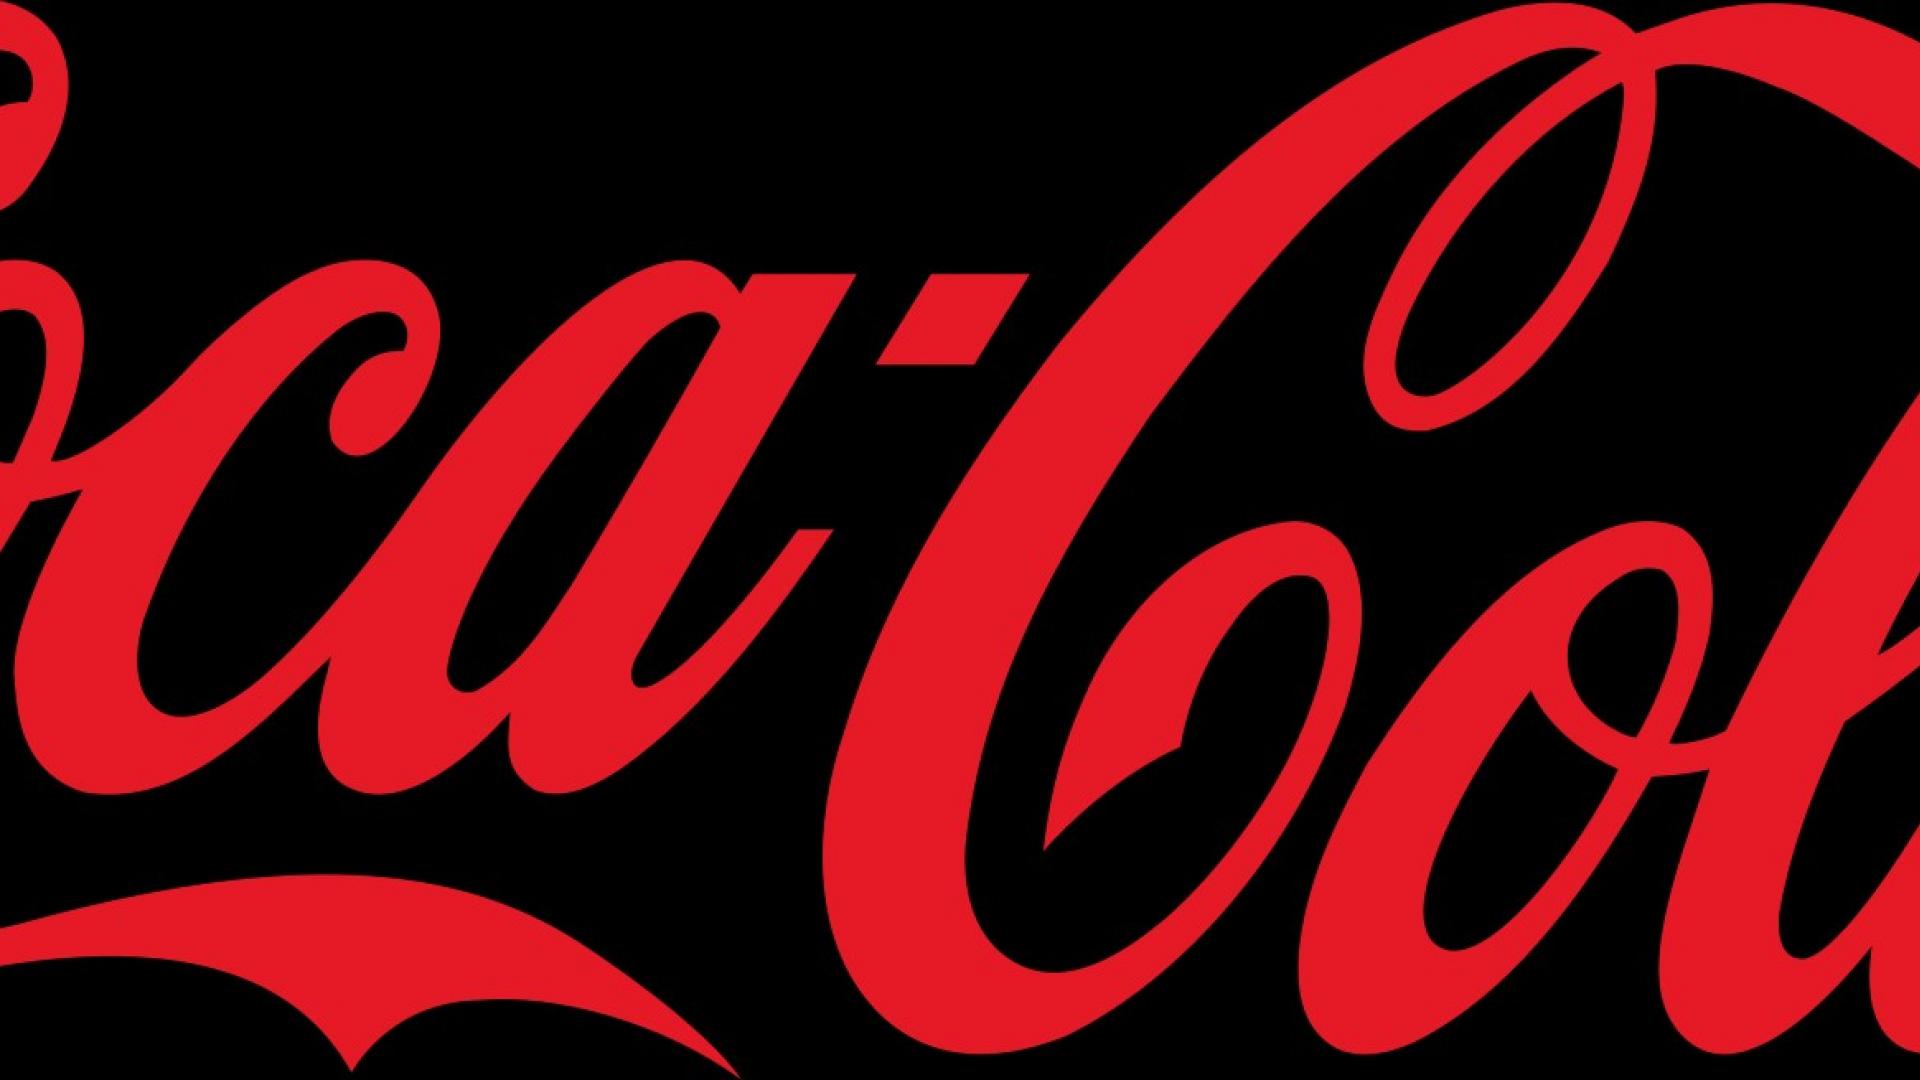 [32+] Coca Cola Logo Wallpapers | WallpaperSafari